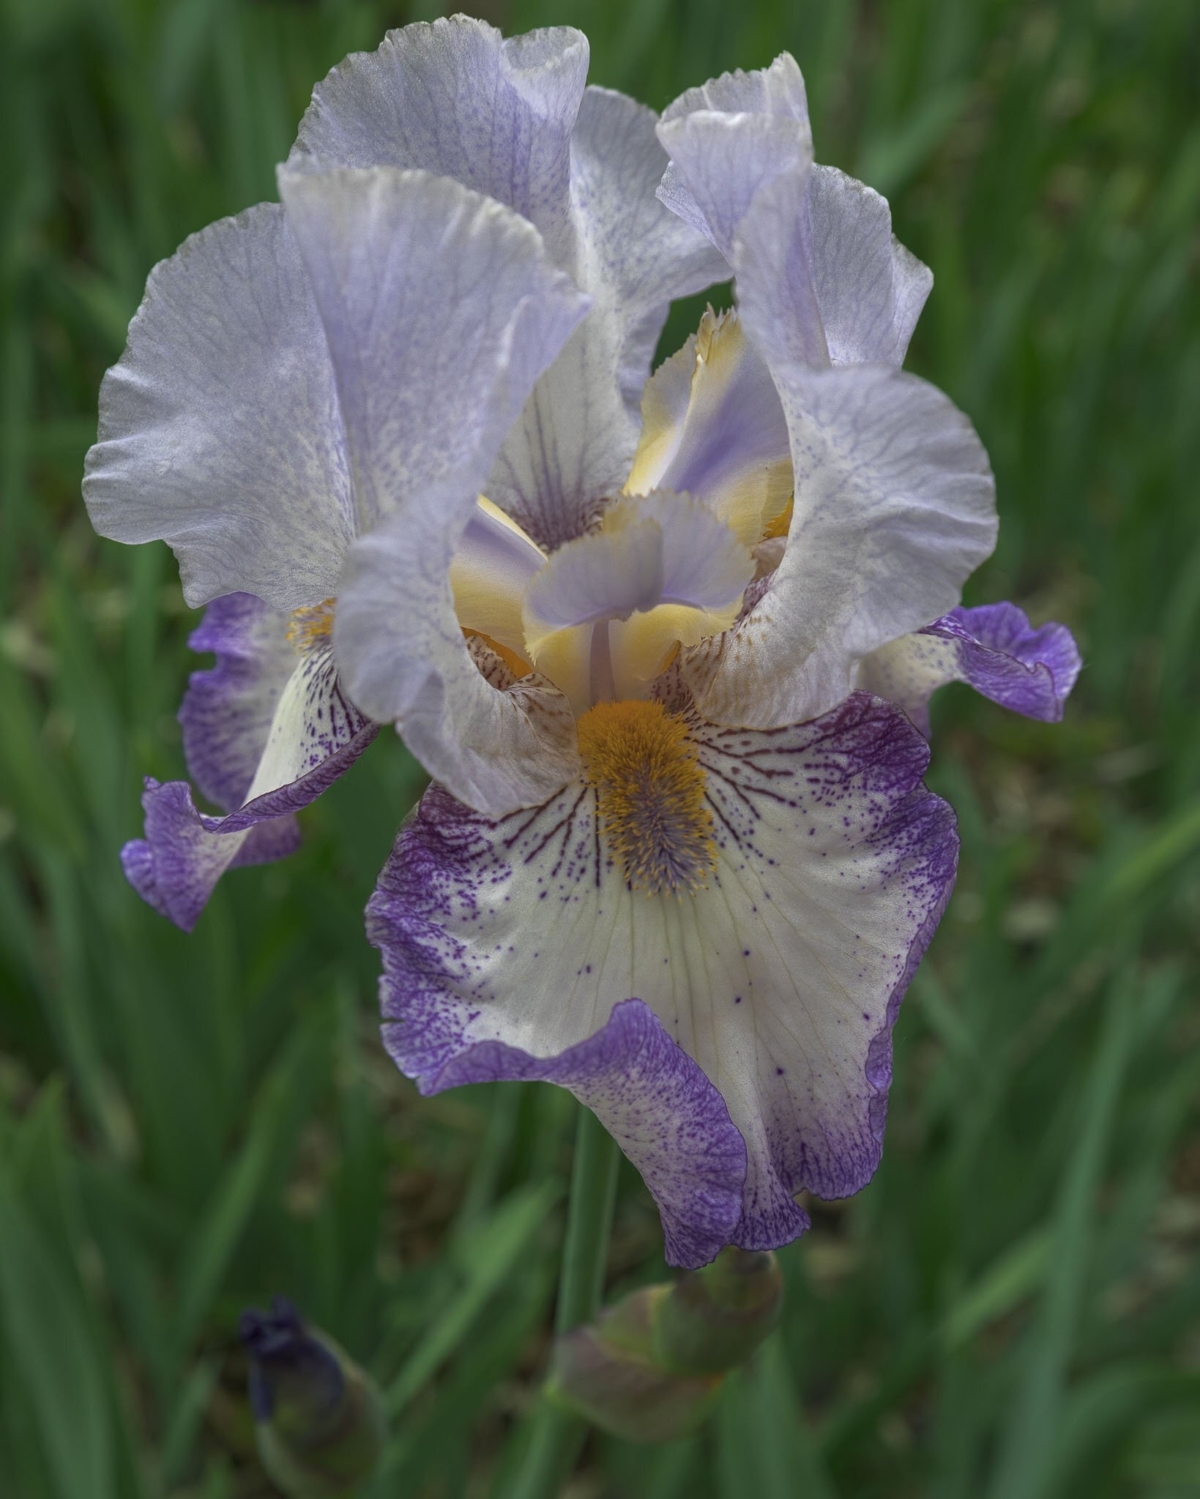 Magnifique iris déployé photographié par Alain Blanchette